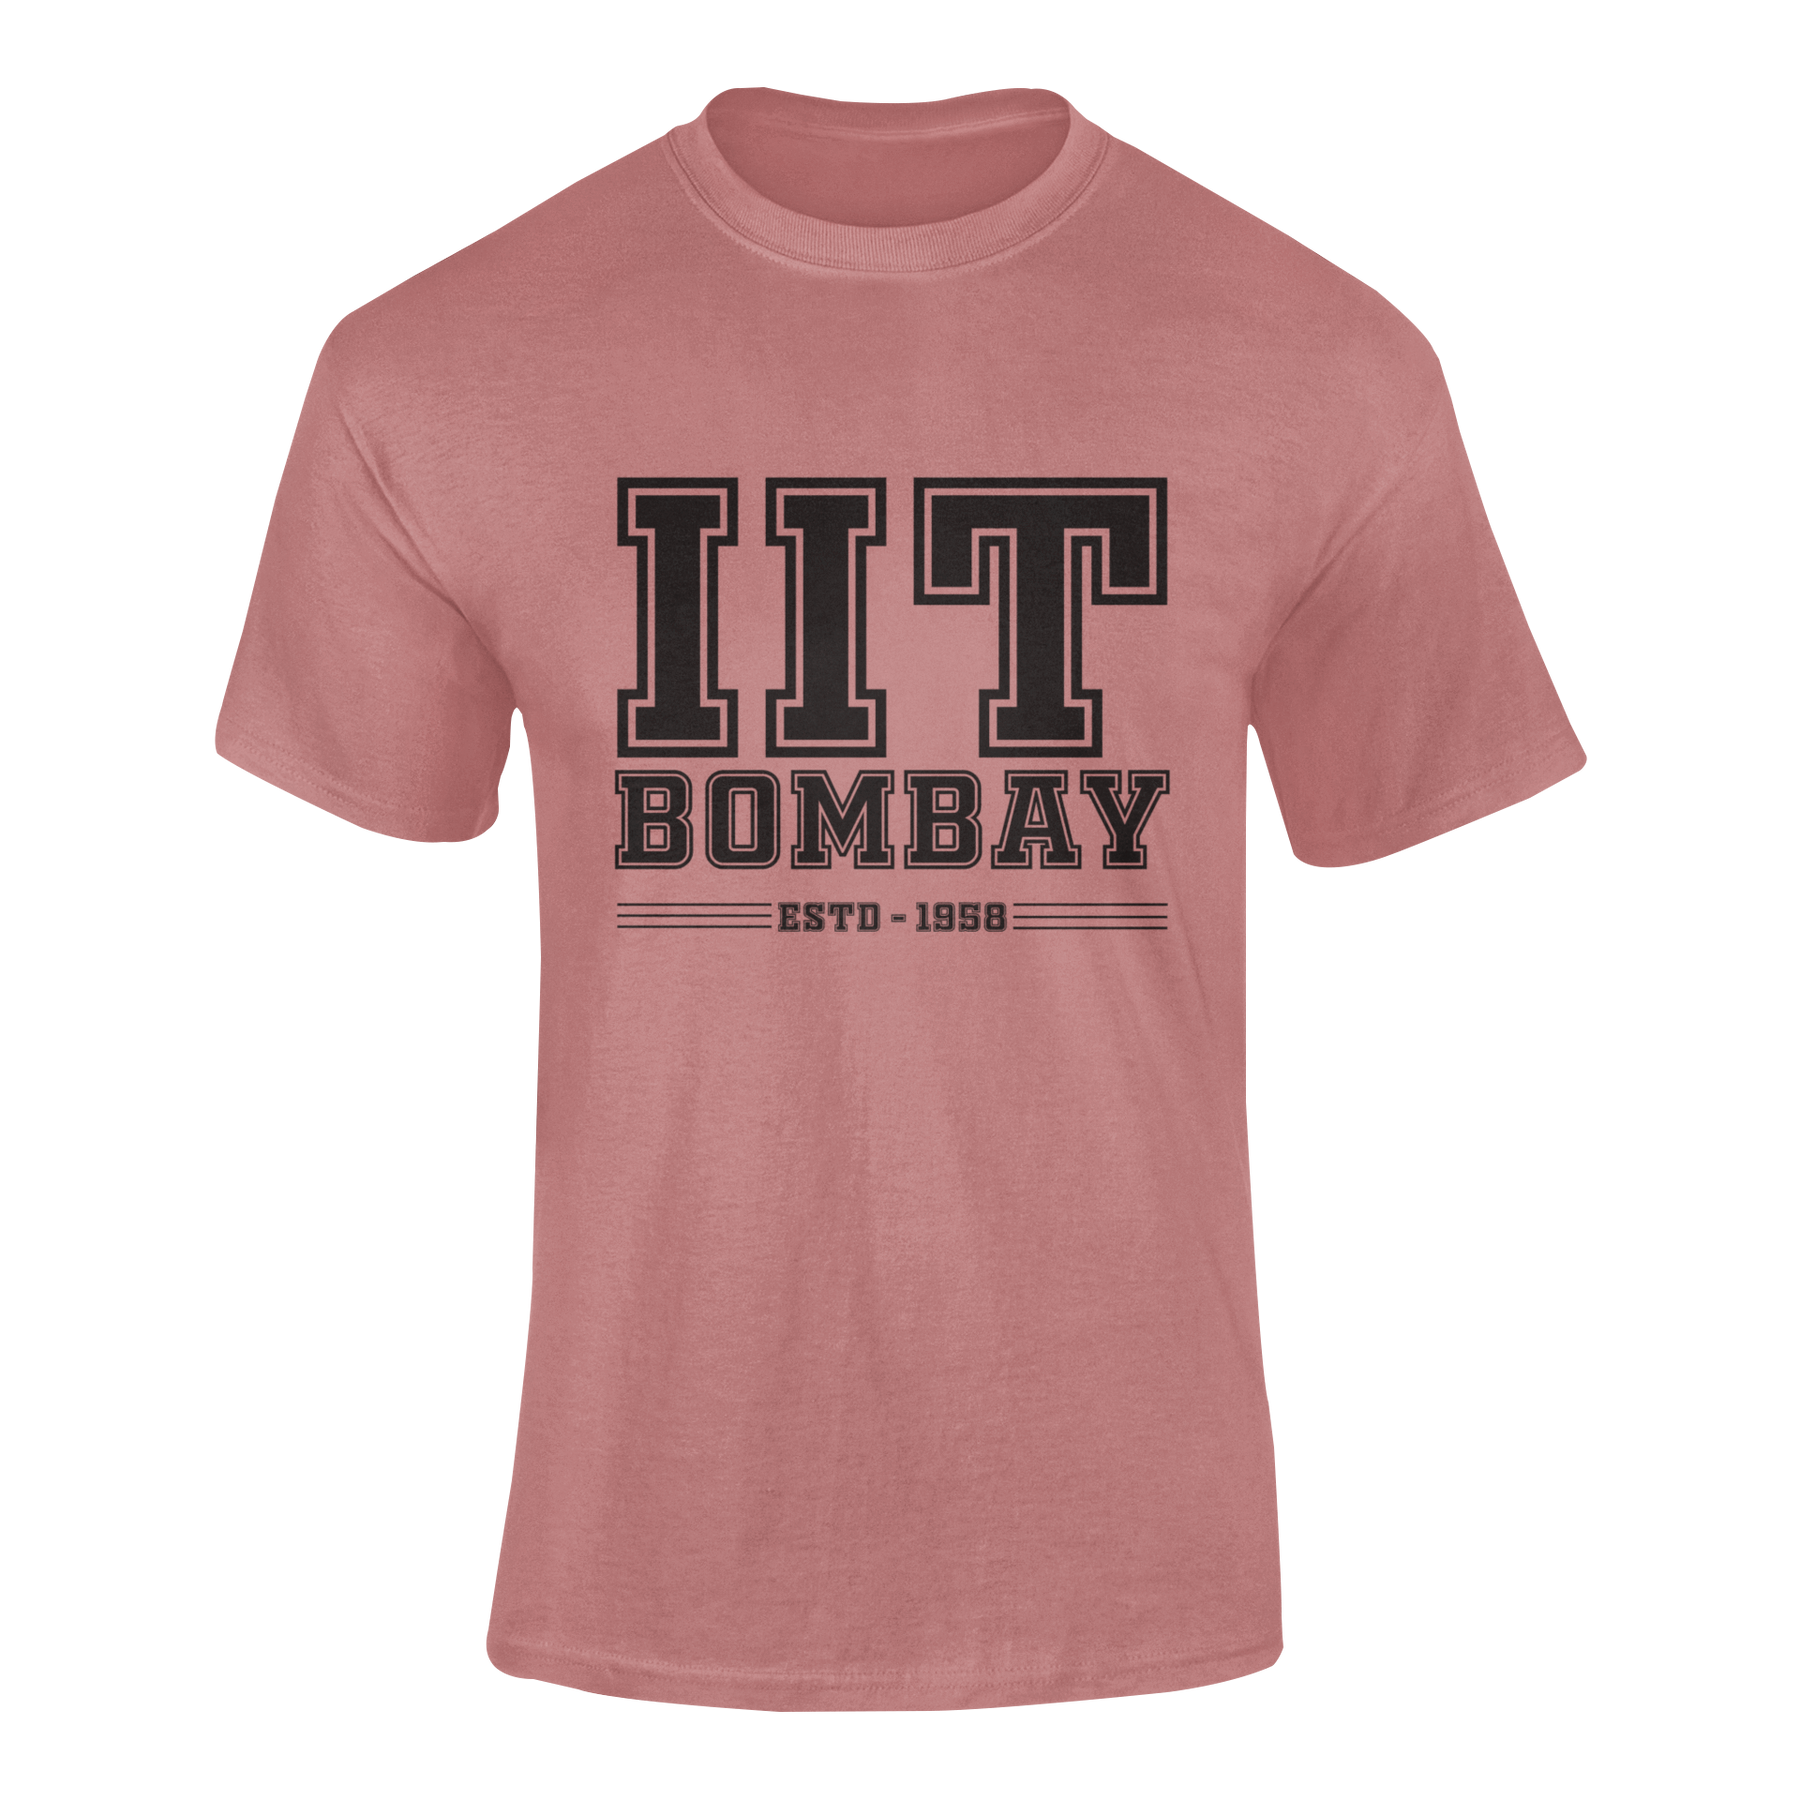 IIT BOMBEY - teeshood.com